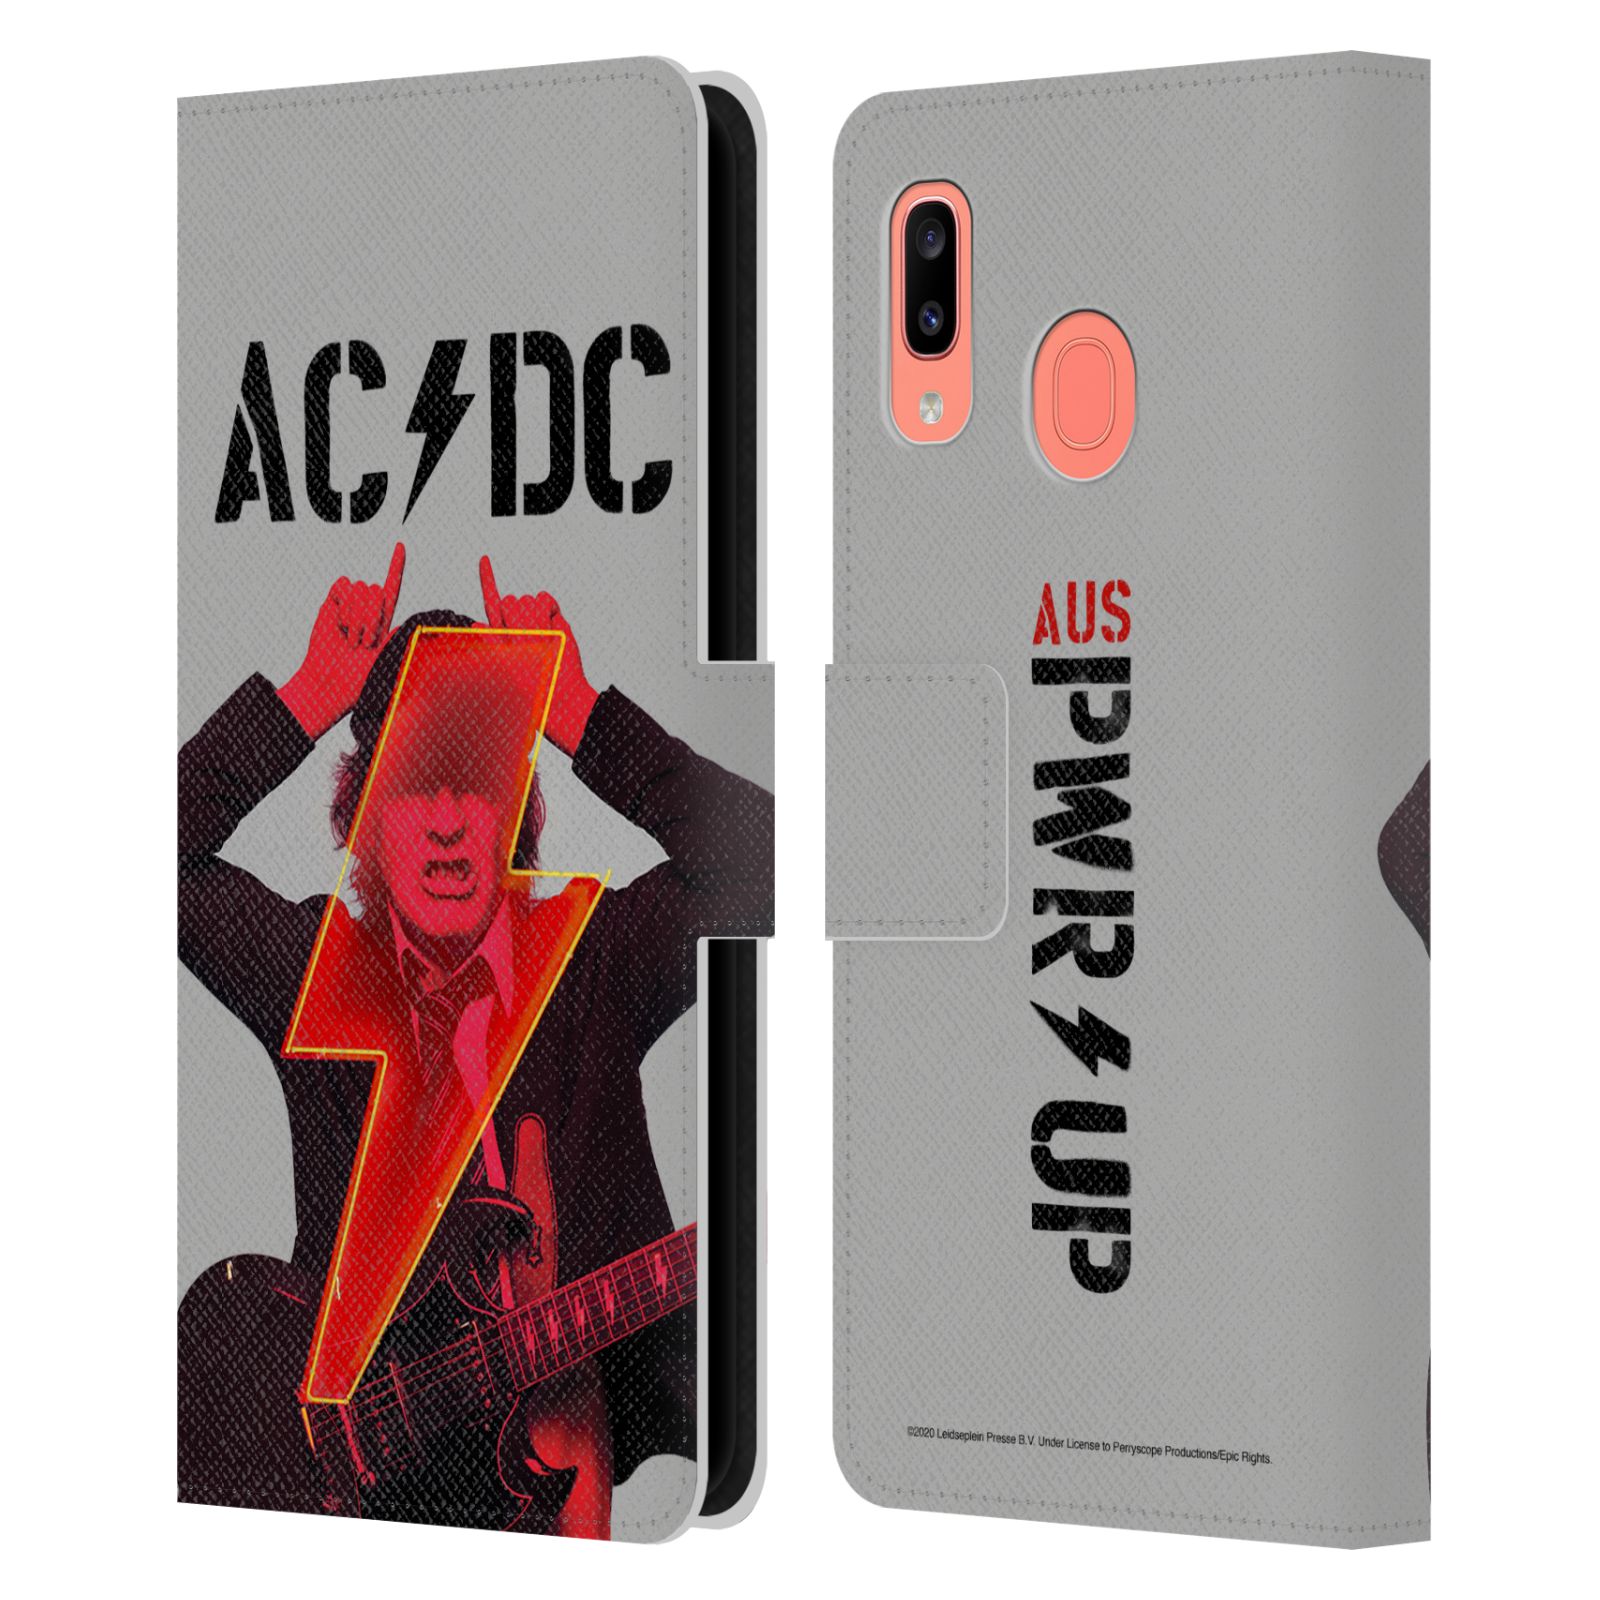 Pouzdro na mobil Samsung Galaxy A20 / Galaxy A30 - HEAD CASE - Rocková skupin ACDC - Rudý ďábel